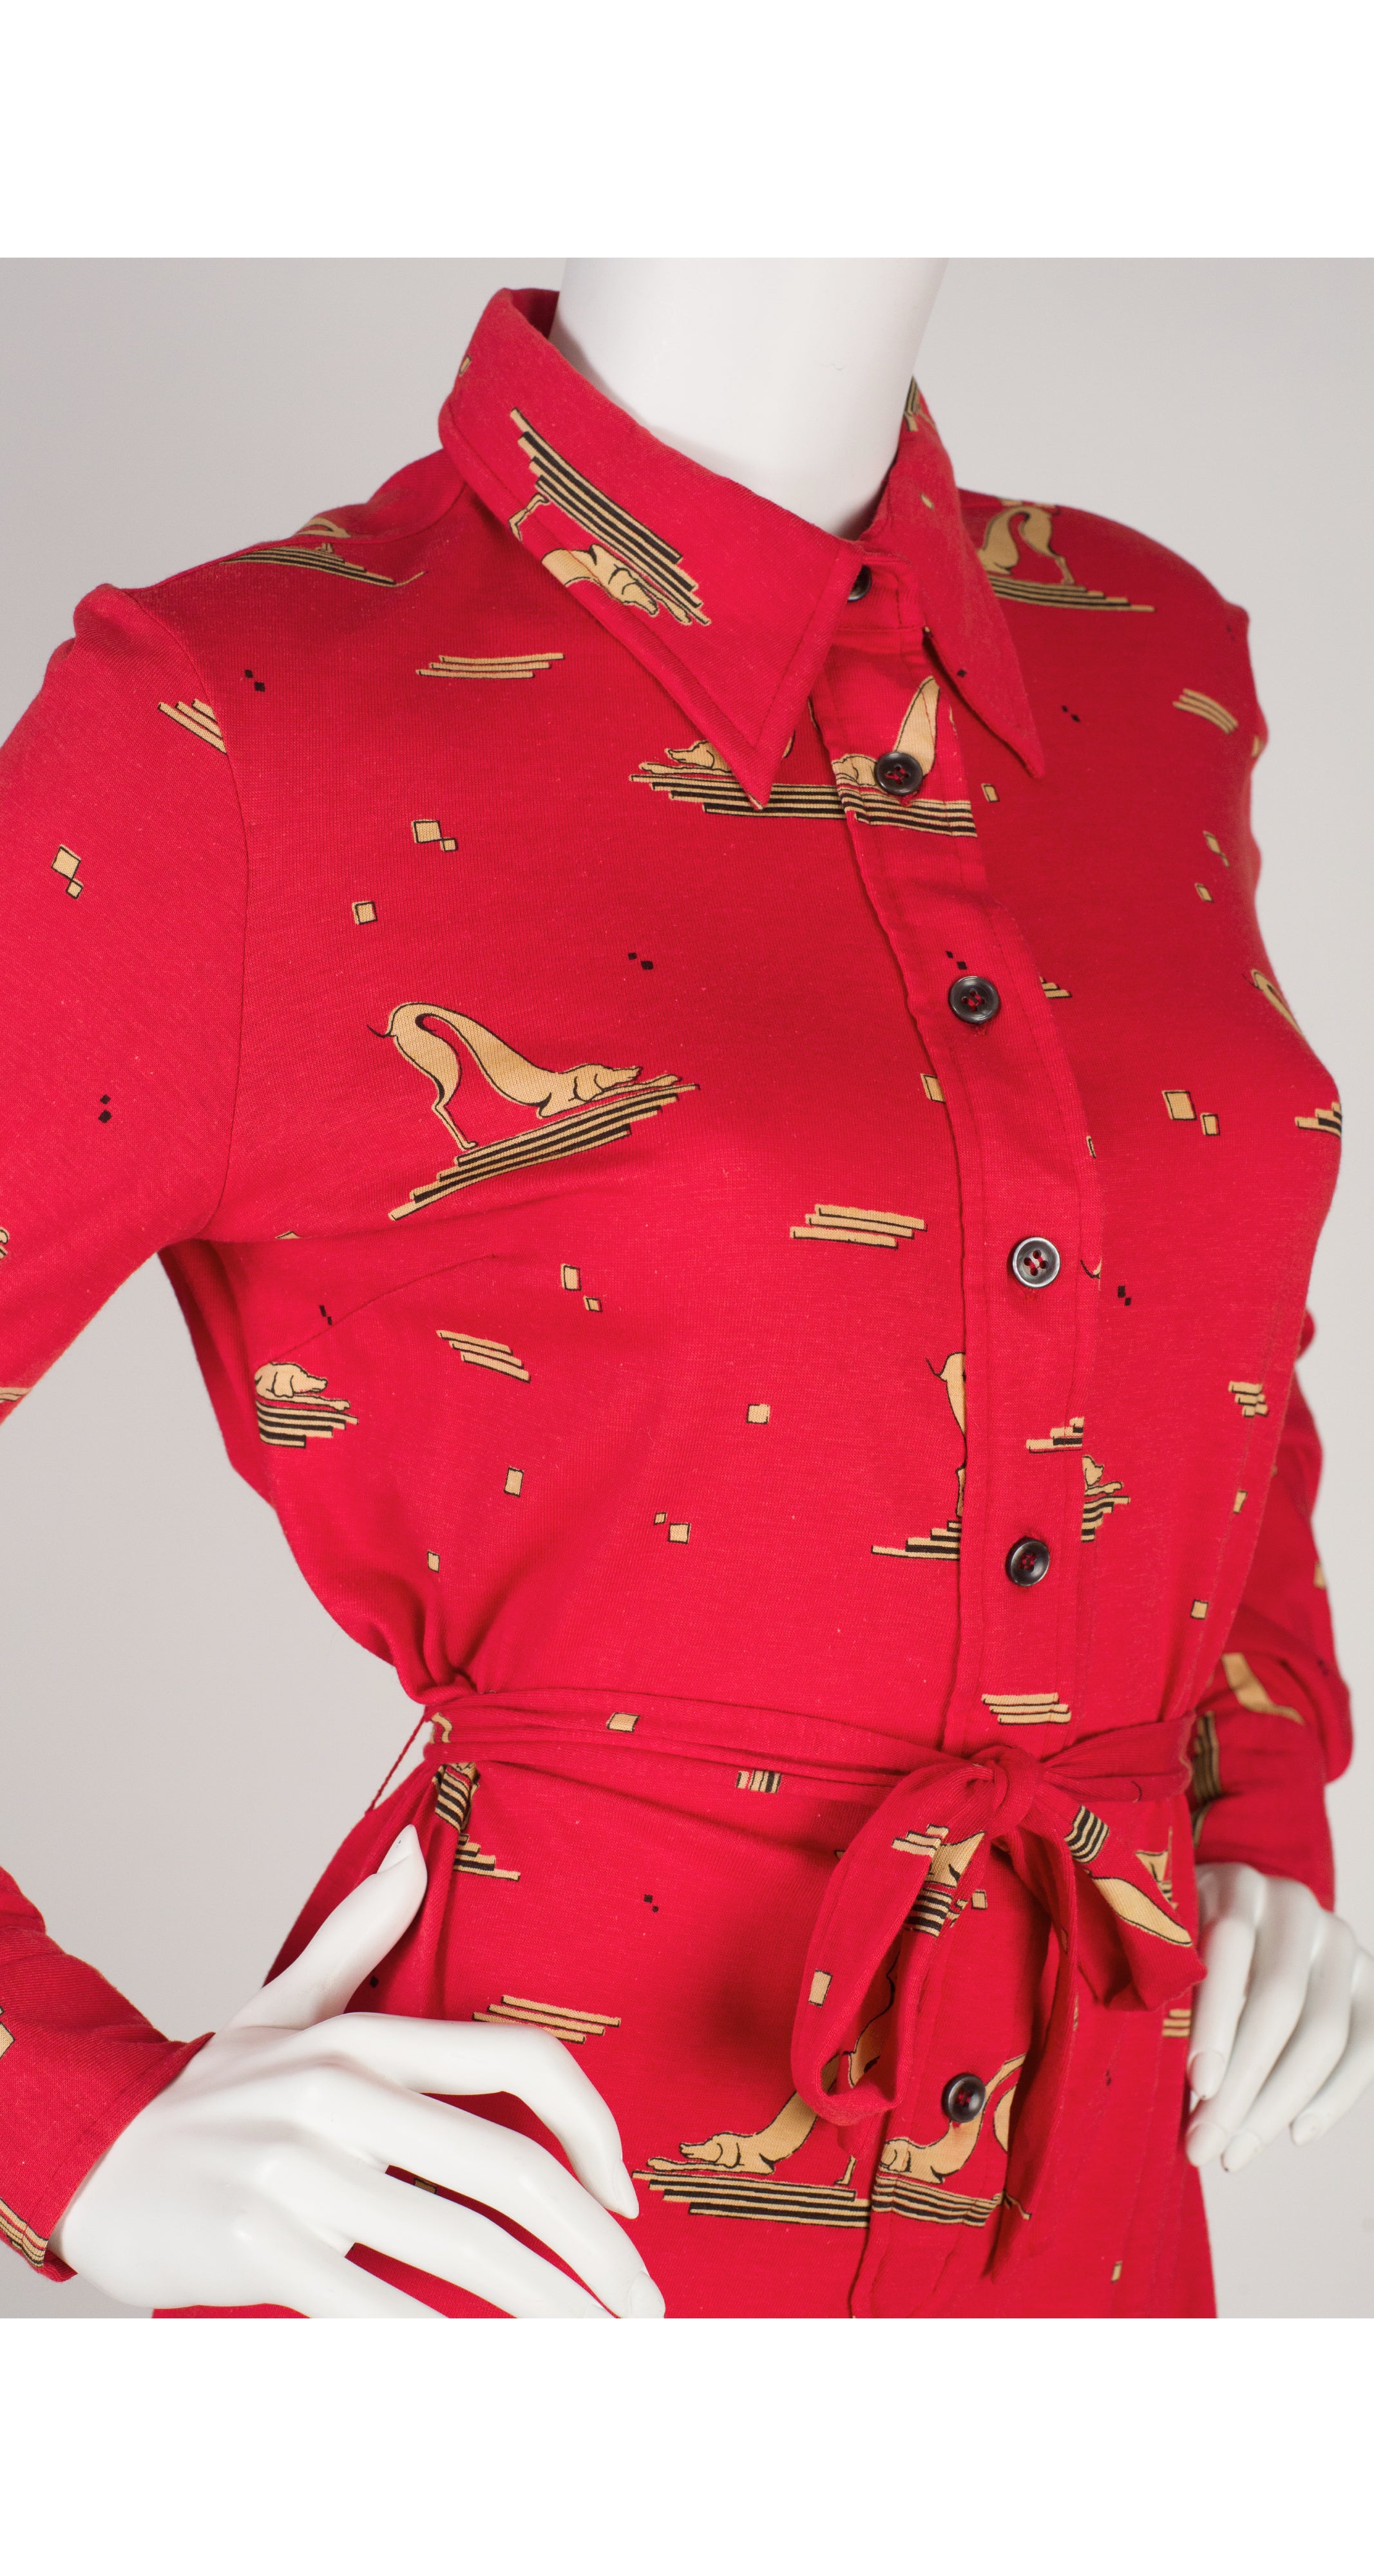 1970s Greyhound Art Deco Print Jersey Shirt Dress